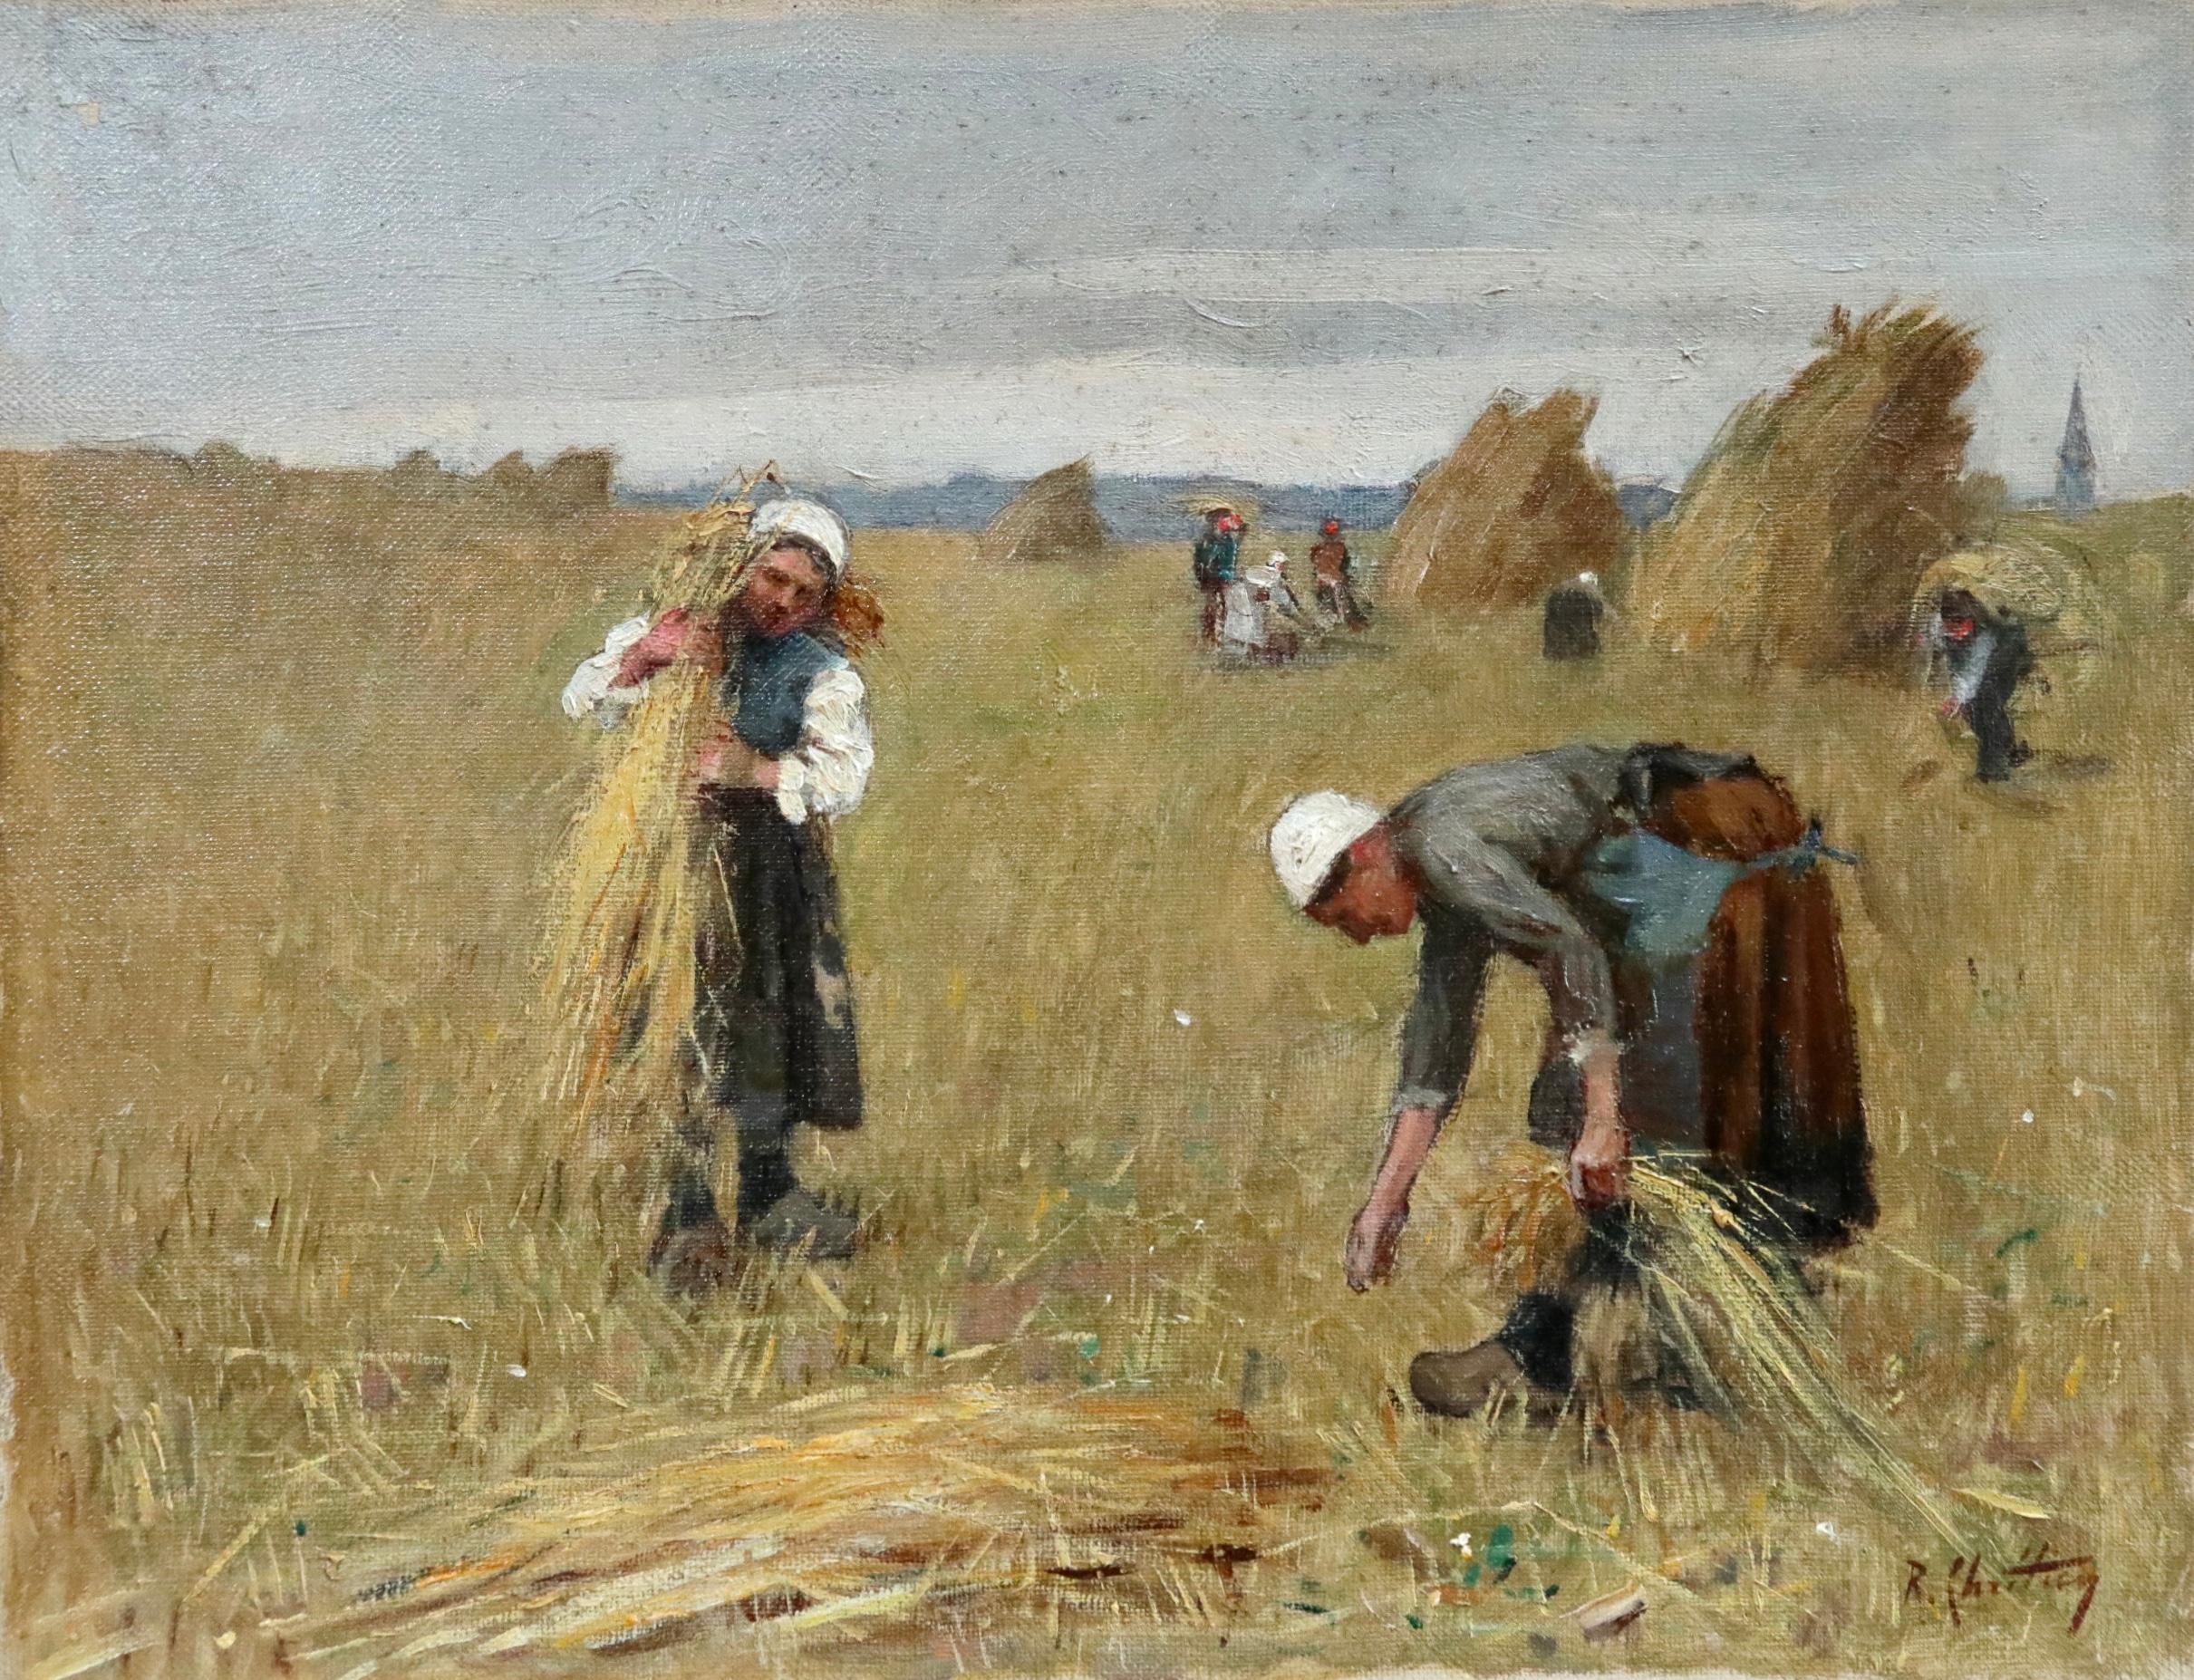 René Louis Chrétien Figurative Painting - Harvesting - 19th Century Oil, Figures in Landscape by Rene Louis Chretien